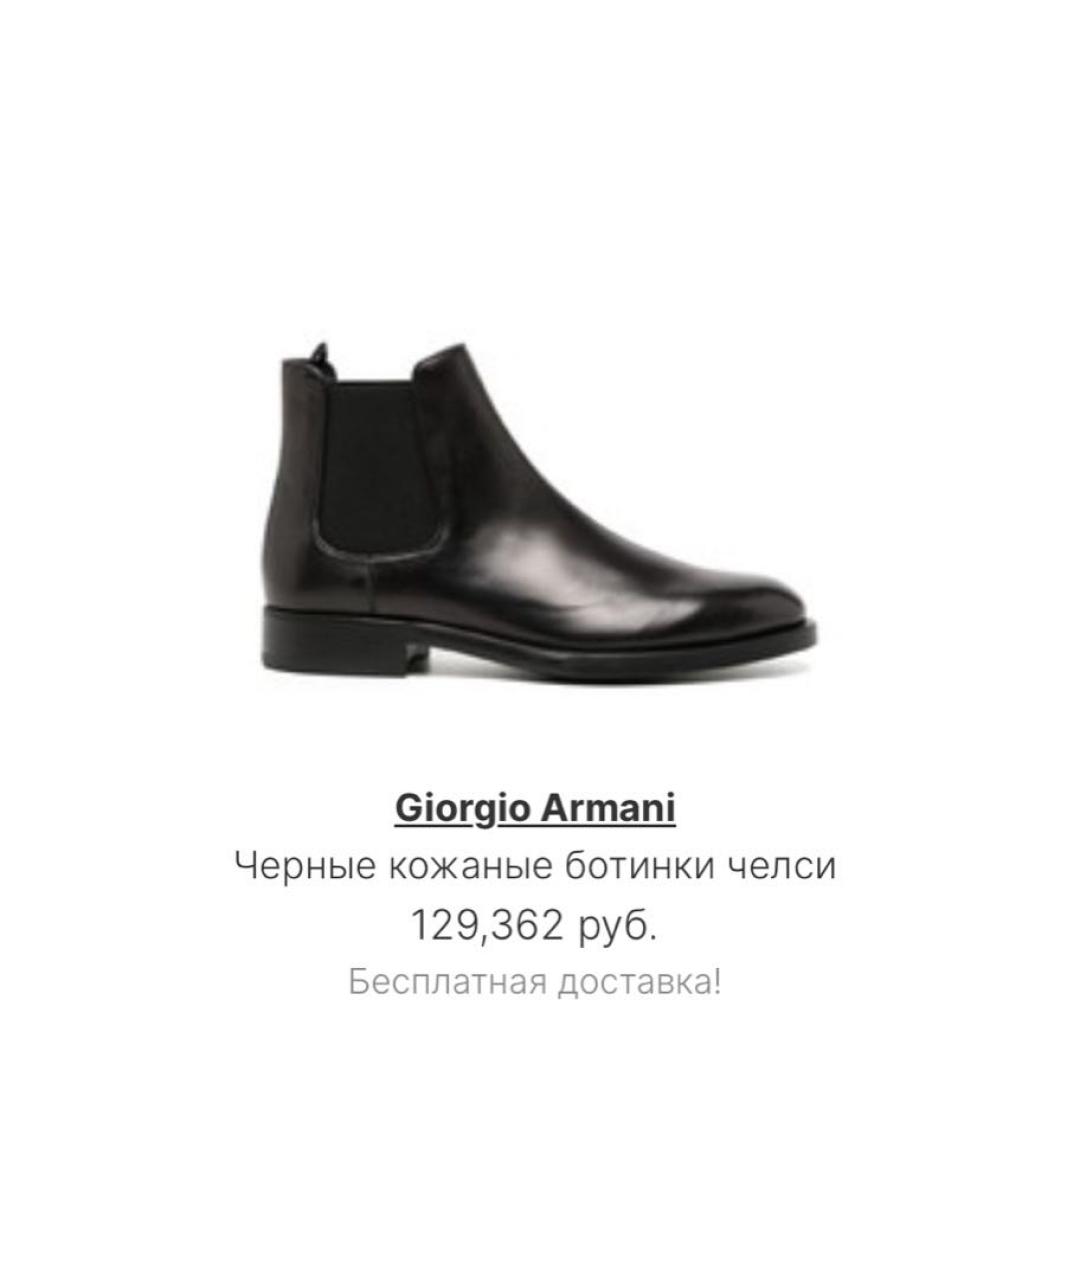 GIORGIO ARMANI Черные кожаные высокие ботинки, фото 8